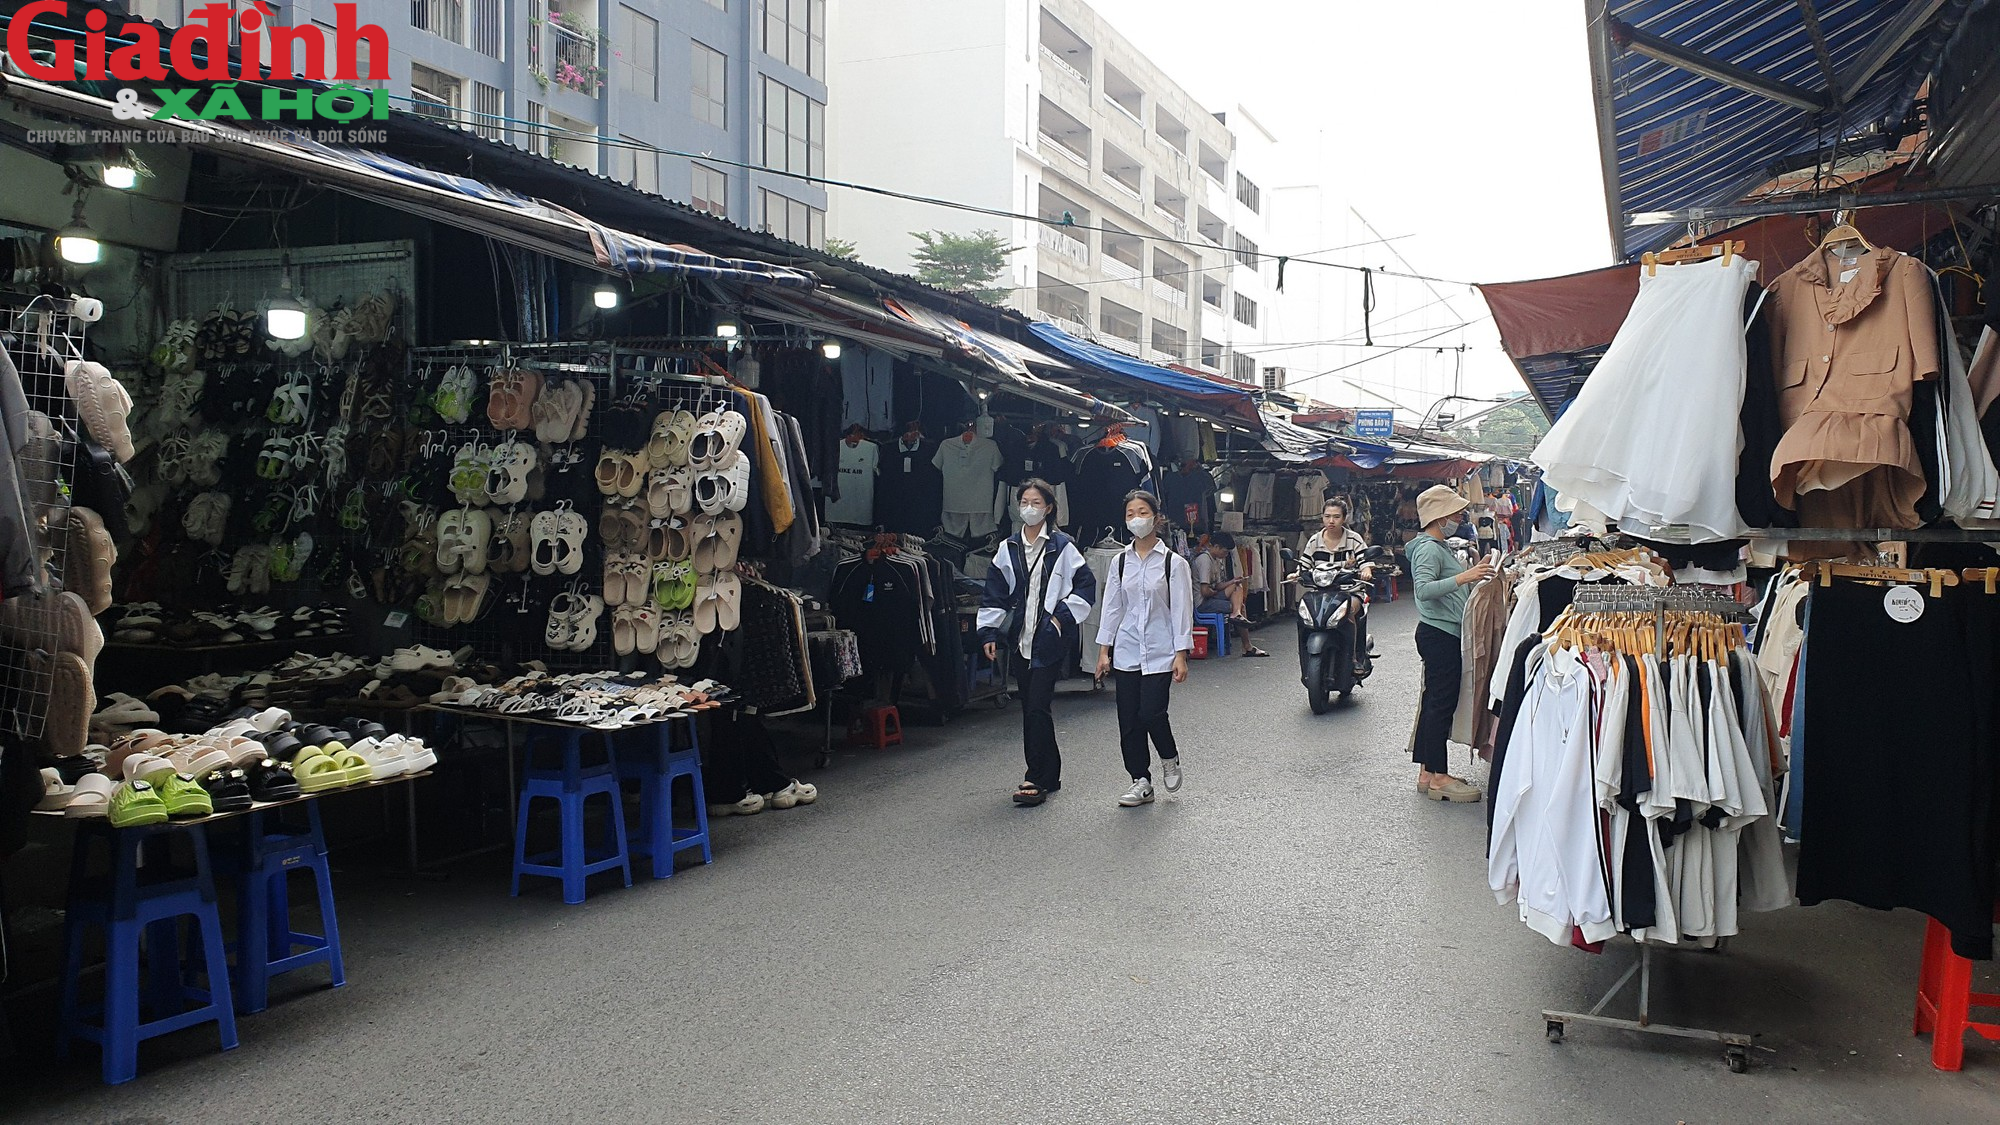 Hà Nội: Đường Phan Văn Trường đang bị chiếm dụng bởi ‘thiên đường mua sắm’ giới trẻ  - Ảnh 5.